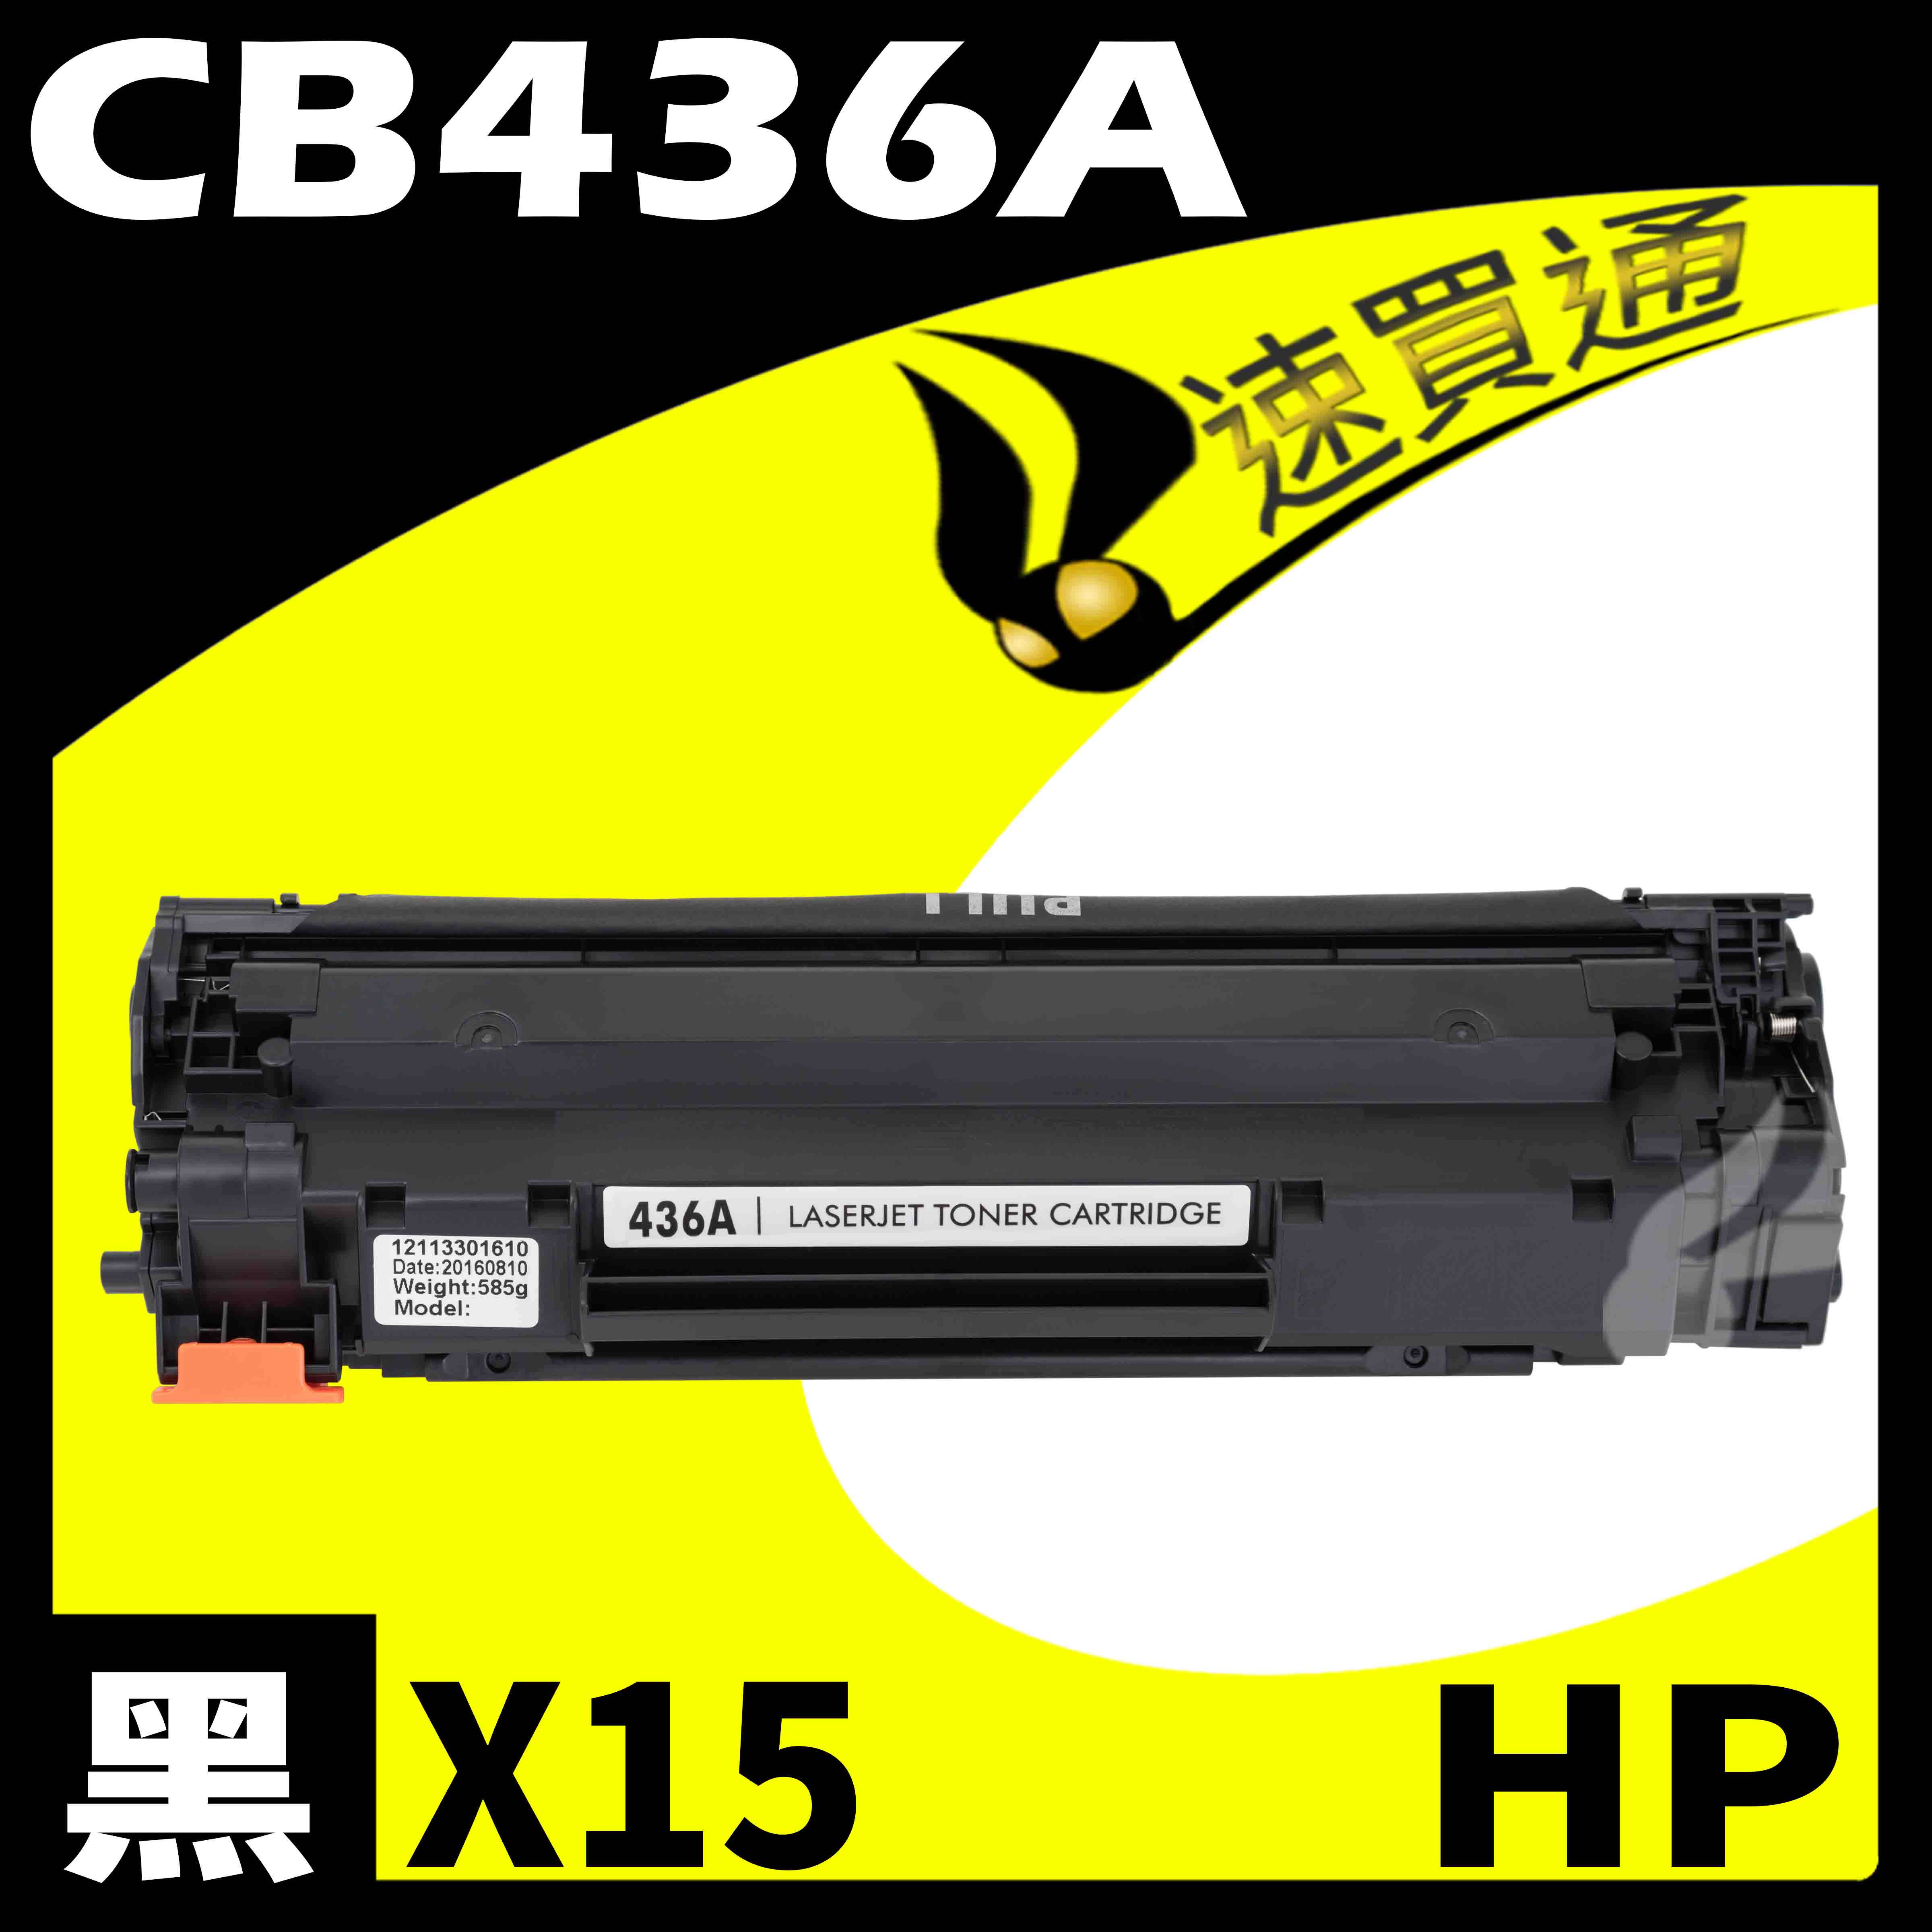 【速買通】超值15件組 HP CB436A 相容碳粉匣